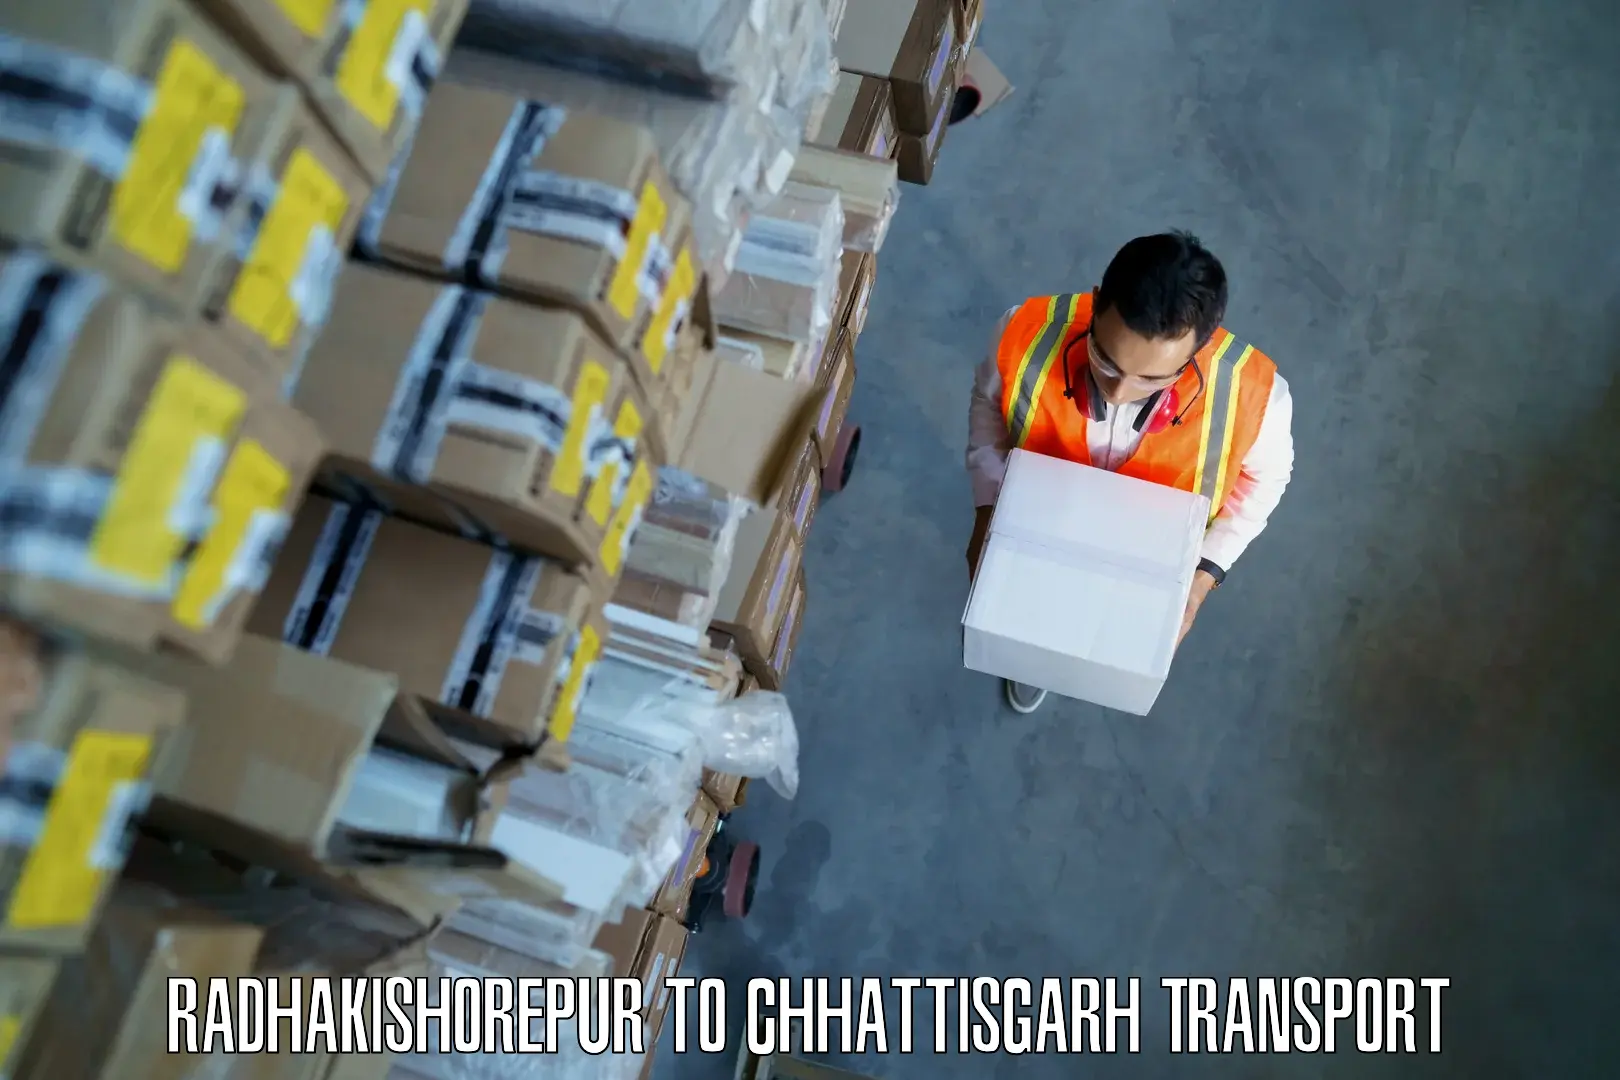 Cargo transport services in Radhakishorepur to Ramanujganj